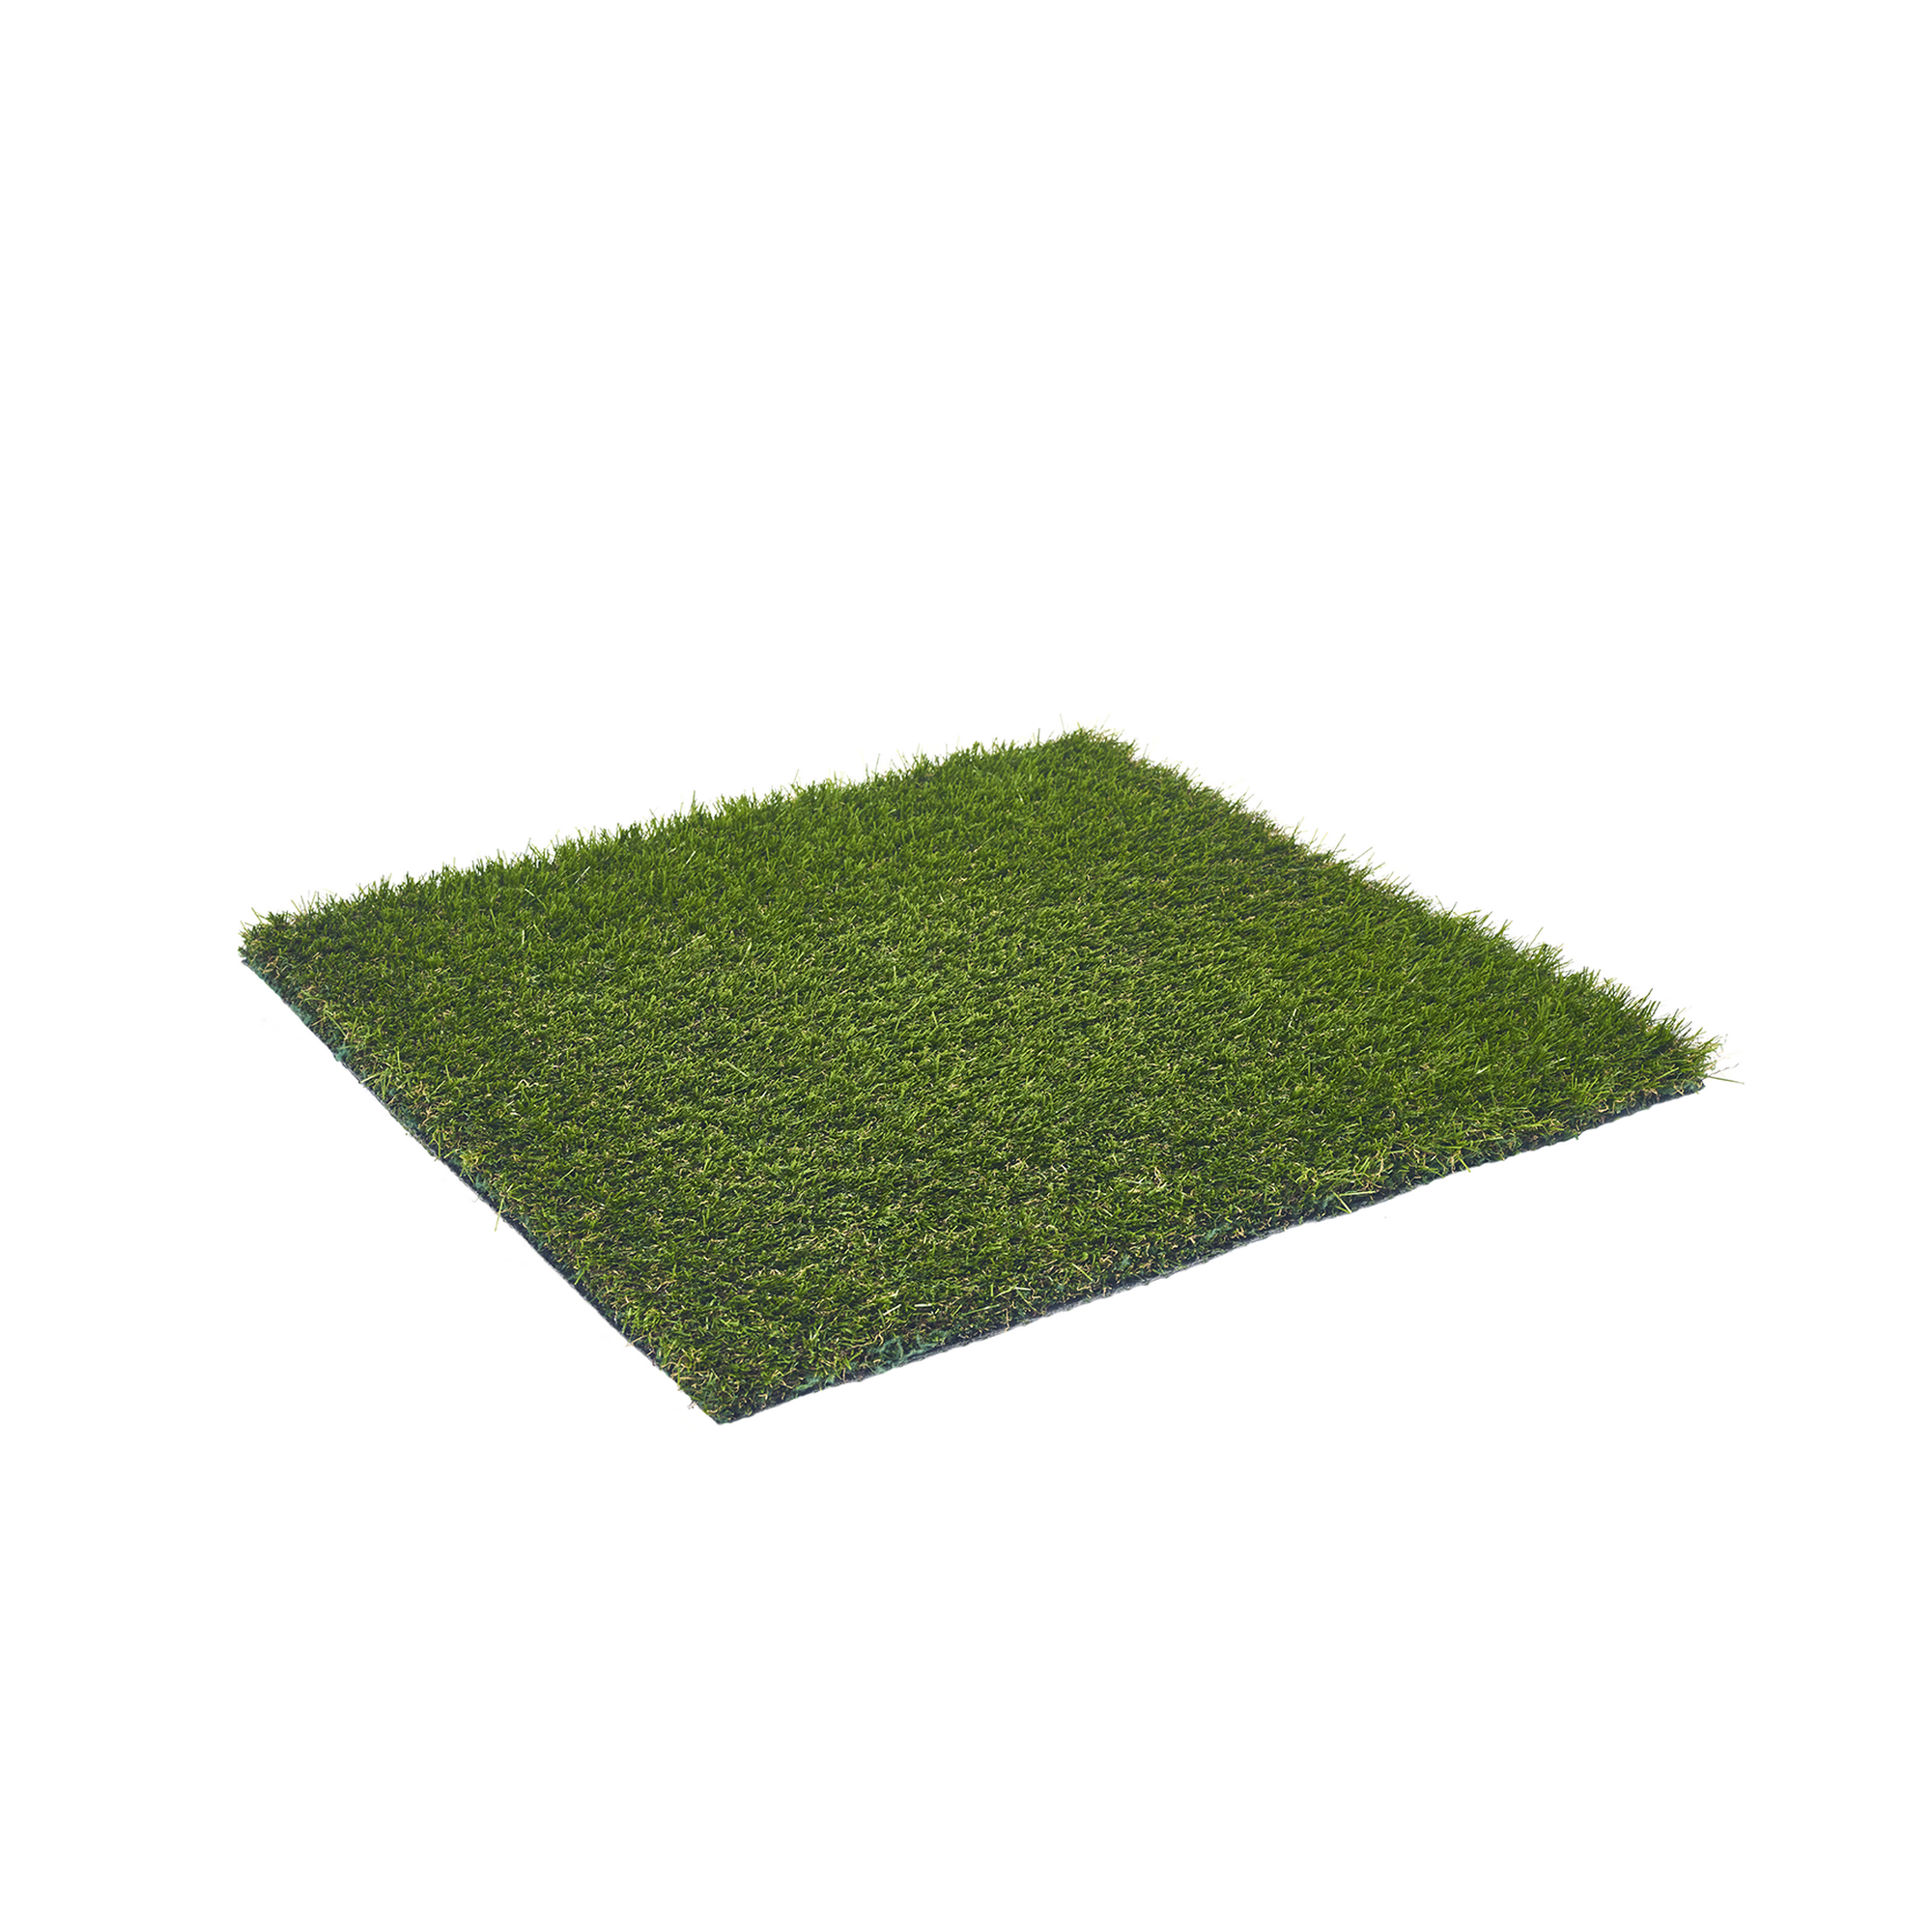 Rasenteppich 'Forestland' Meterware grün, Breite 200 cm + product picture